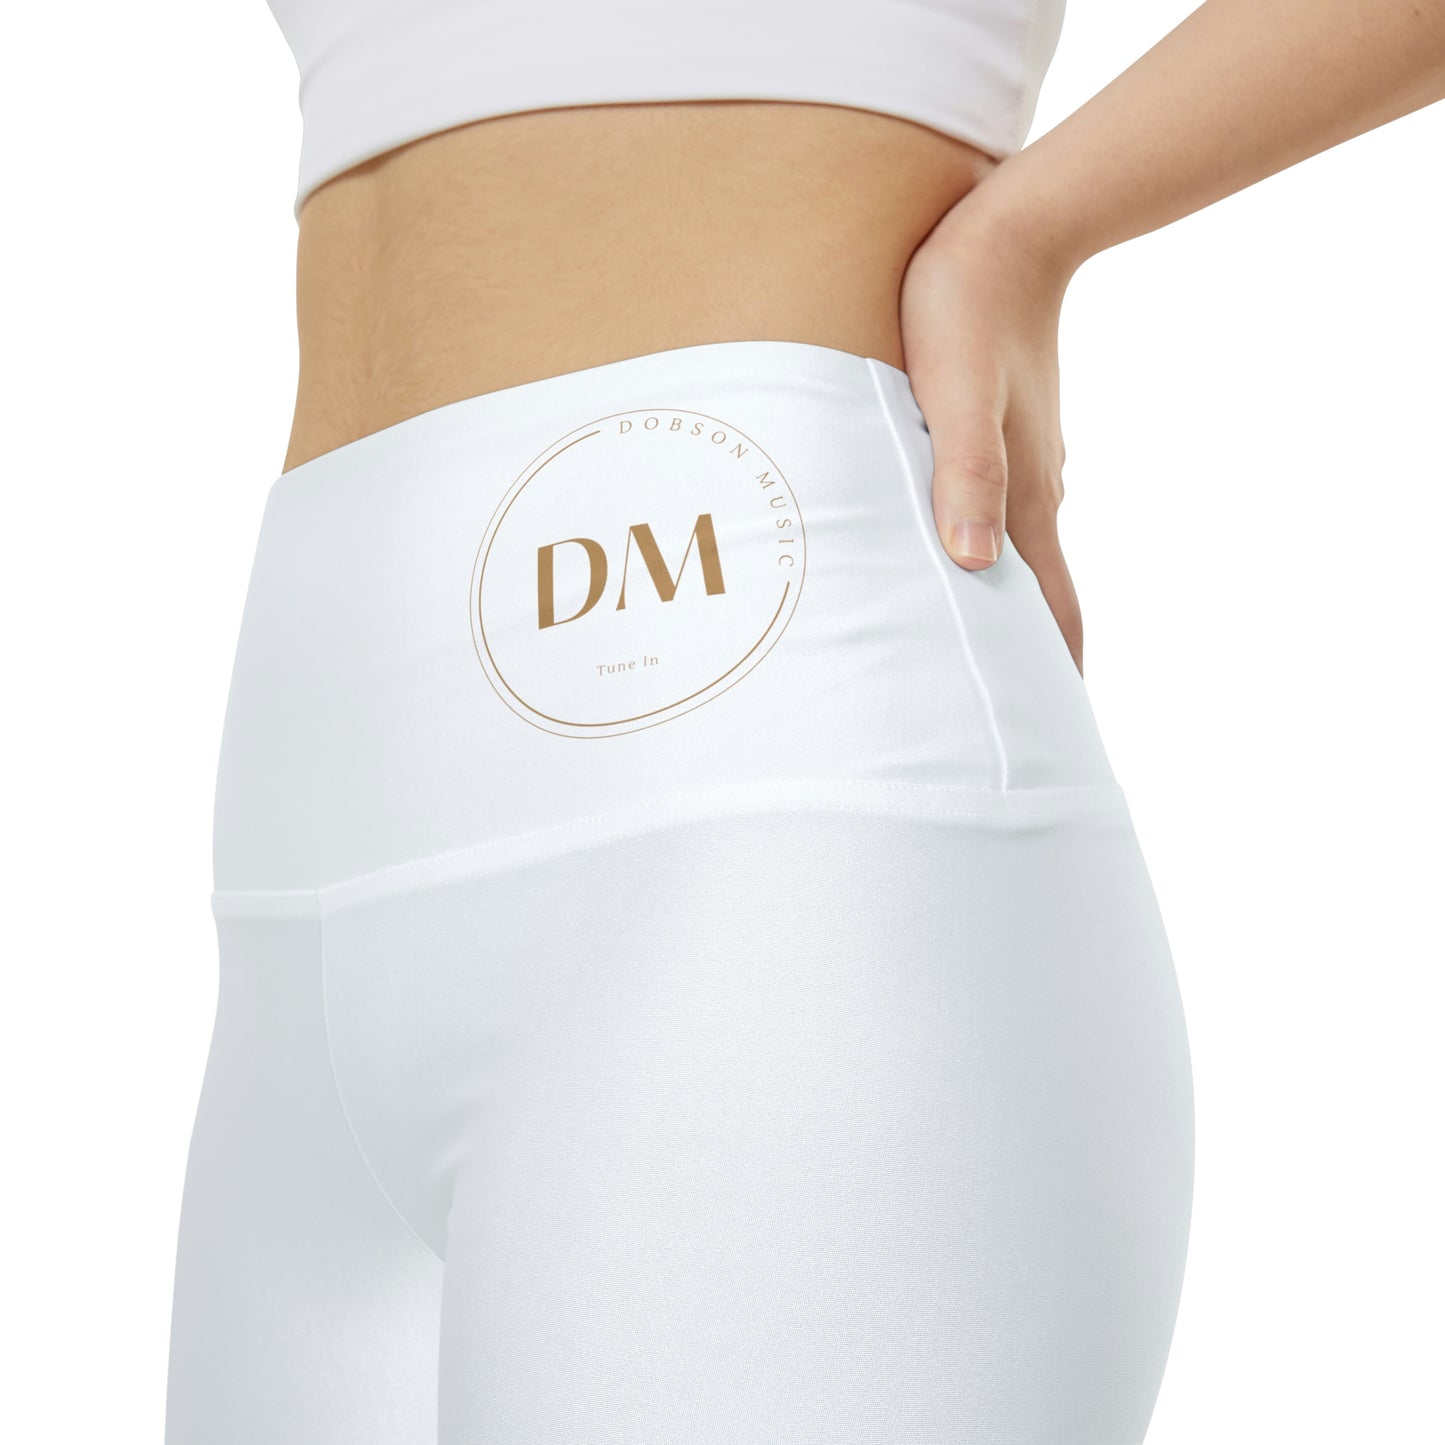 DM Women's Workout Shorts (AOP) - White